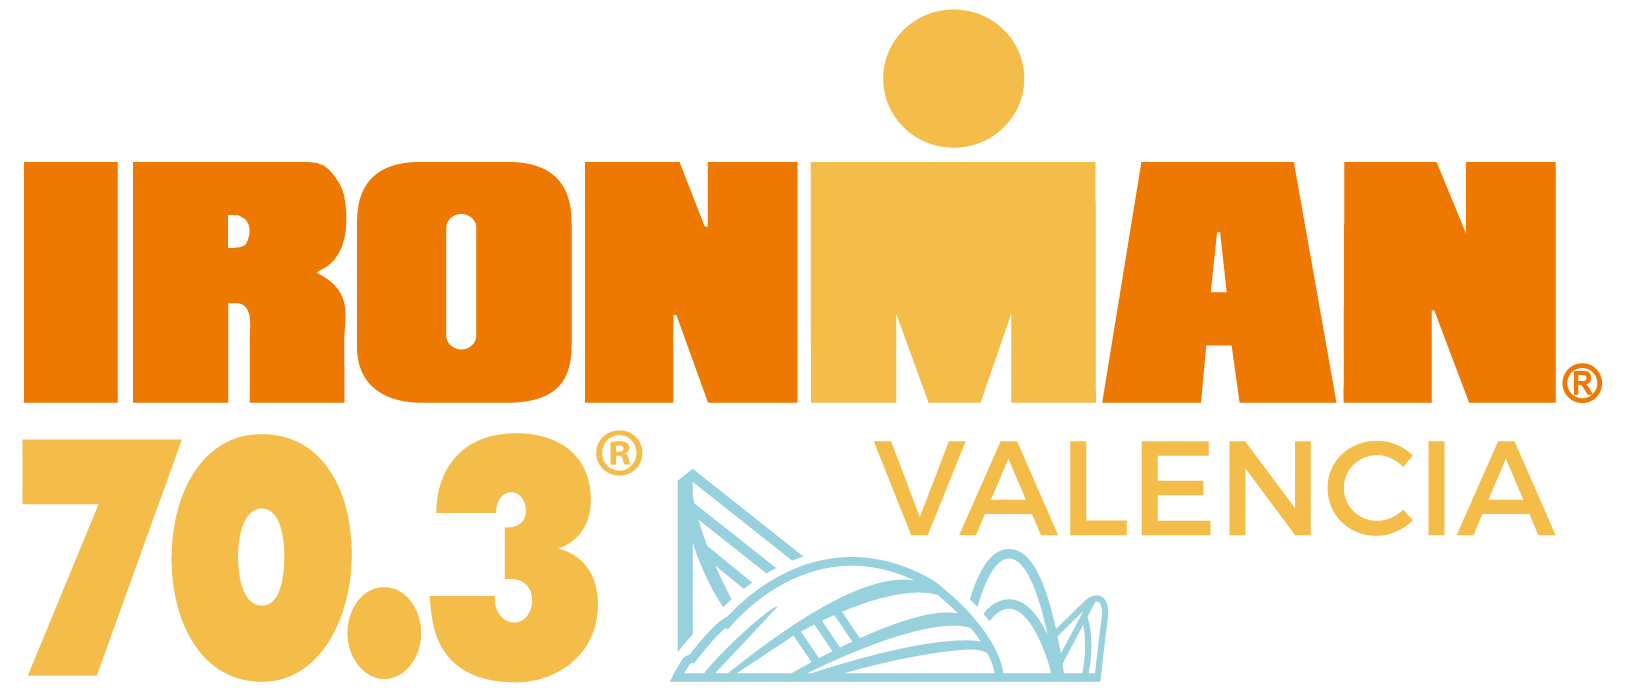 official IRONMAN 70.3 Valencia race logo